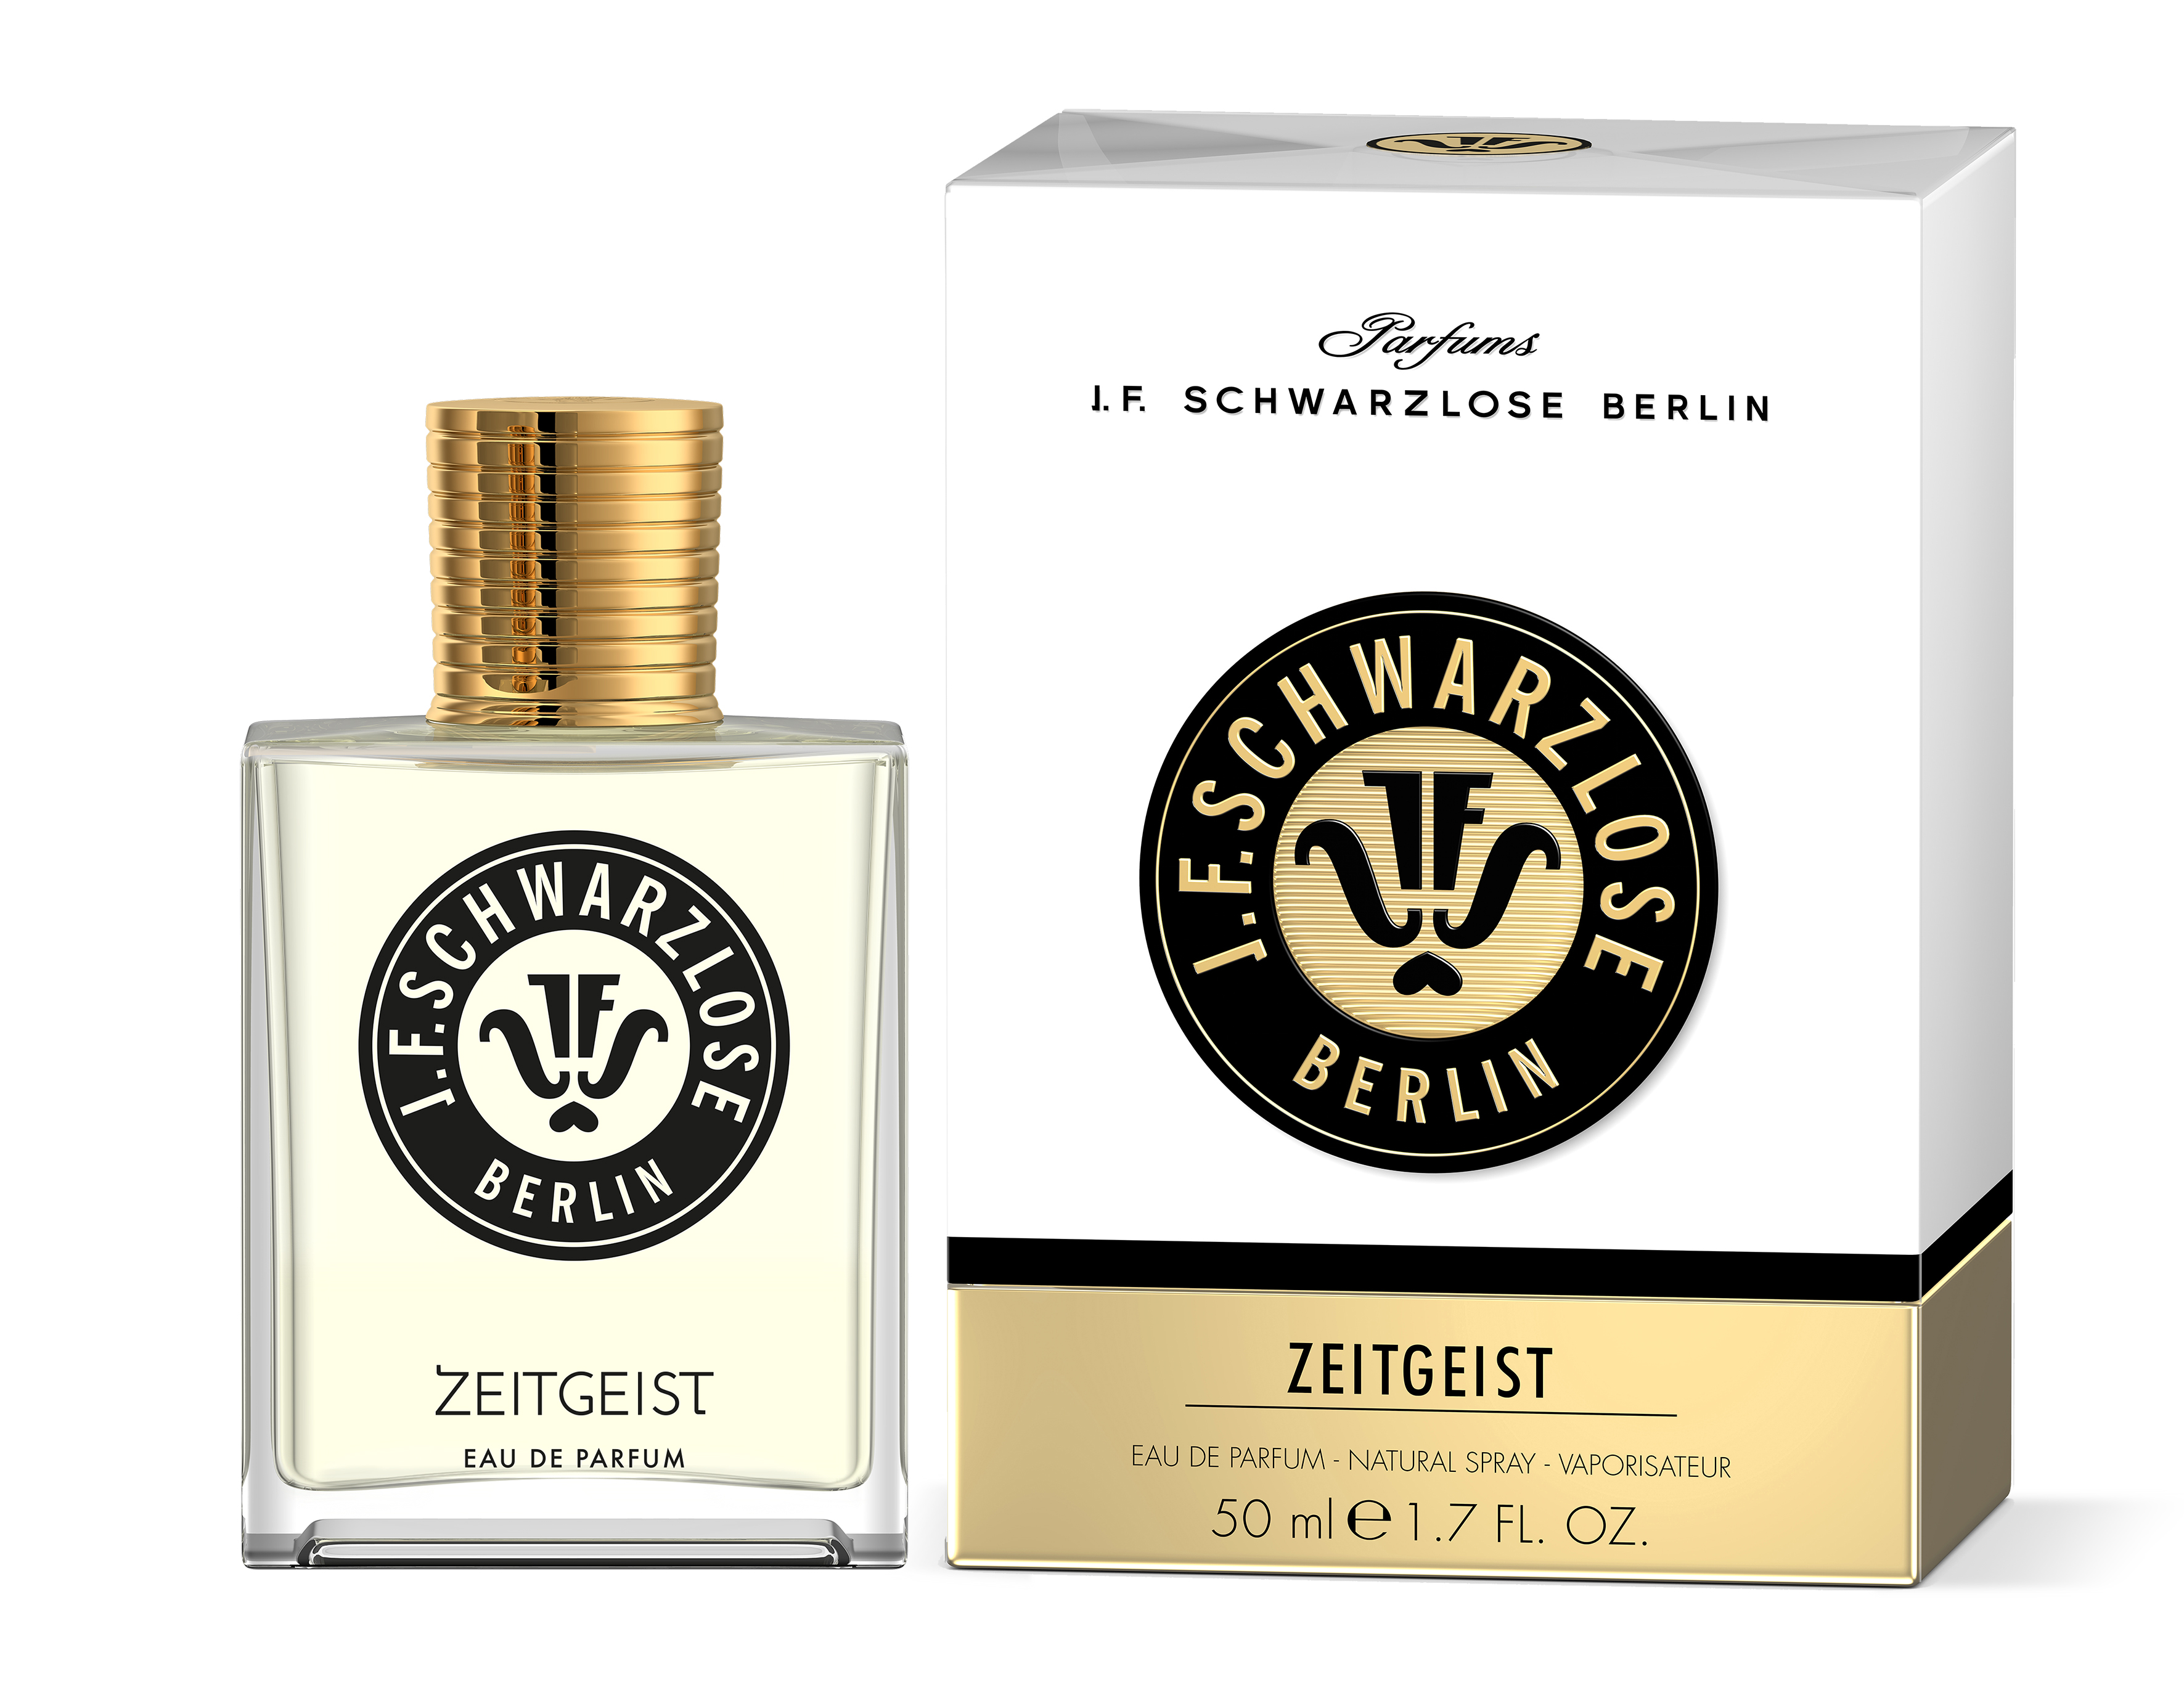 J.F. Schwarzlose Berlin ZEITGEIST Eau de Parfum